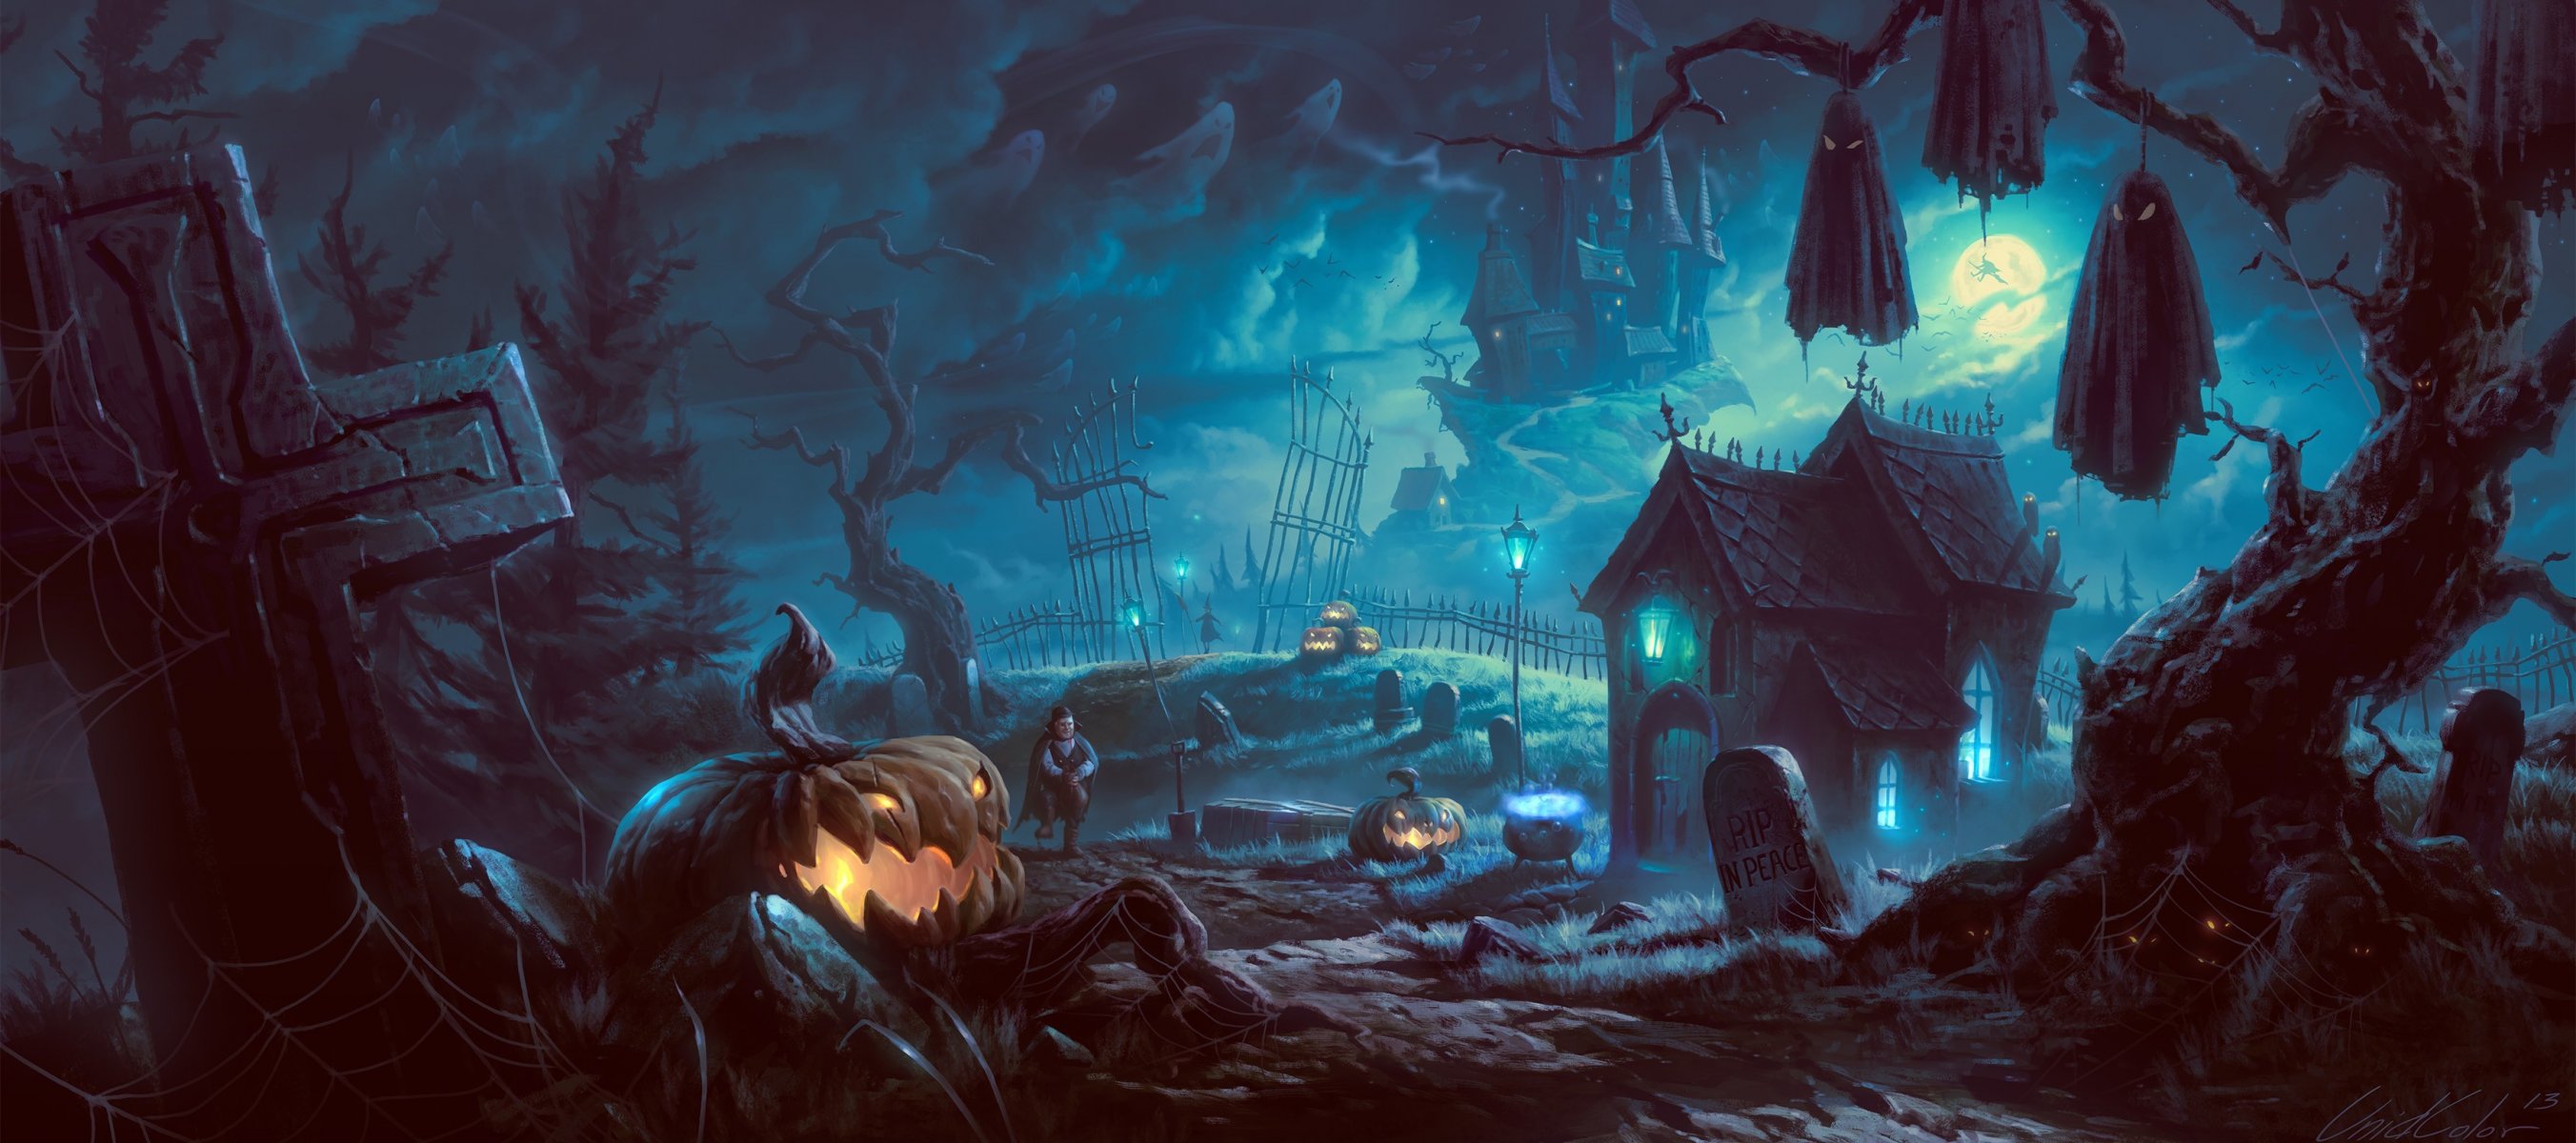 арт хэллоуин ночь деревья вампир тыква летучие мыши дерево замок дом мрачно фонари луна могилы